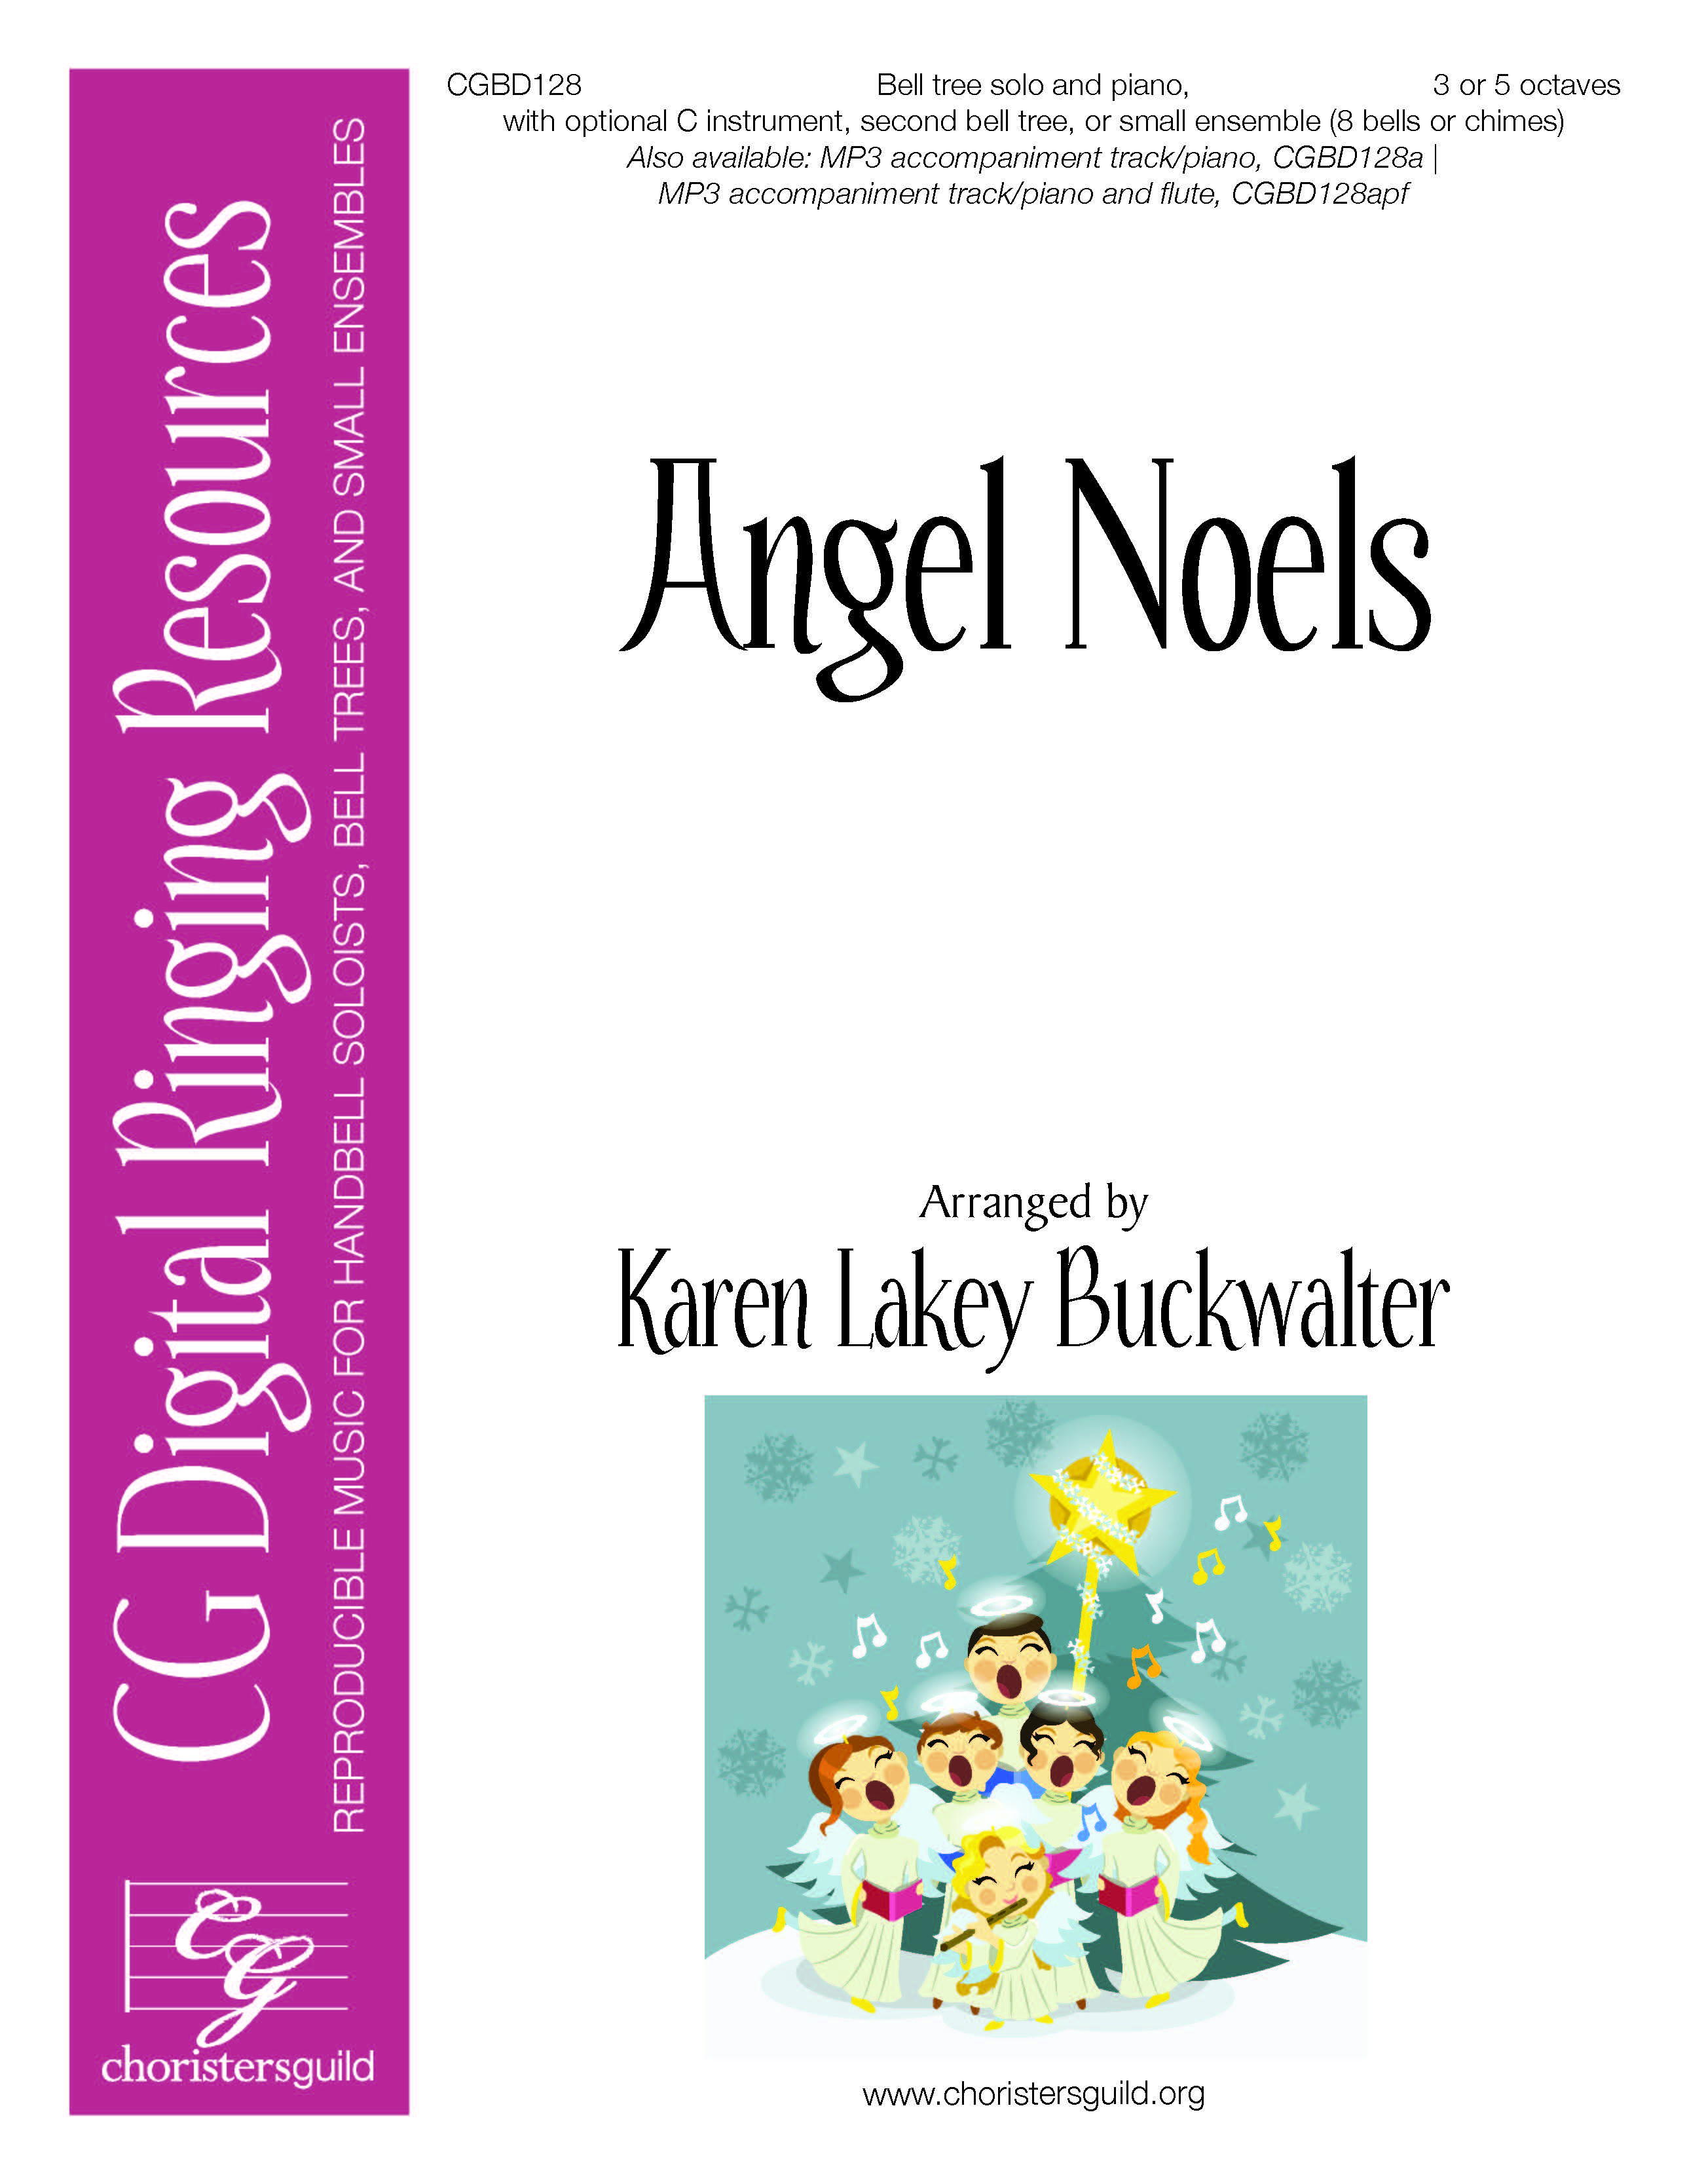 Angels Noel - Digital Accompaniment Track (piano)